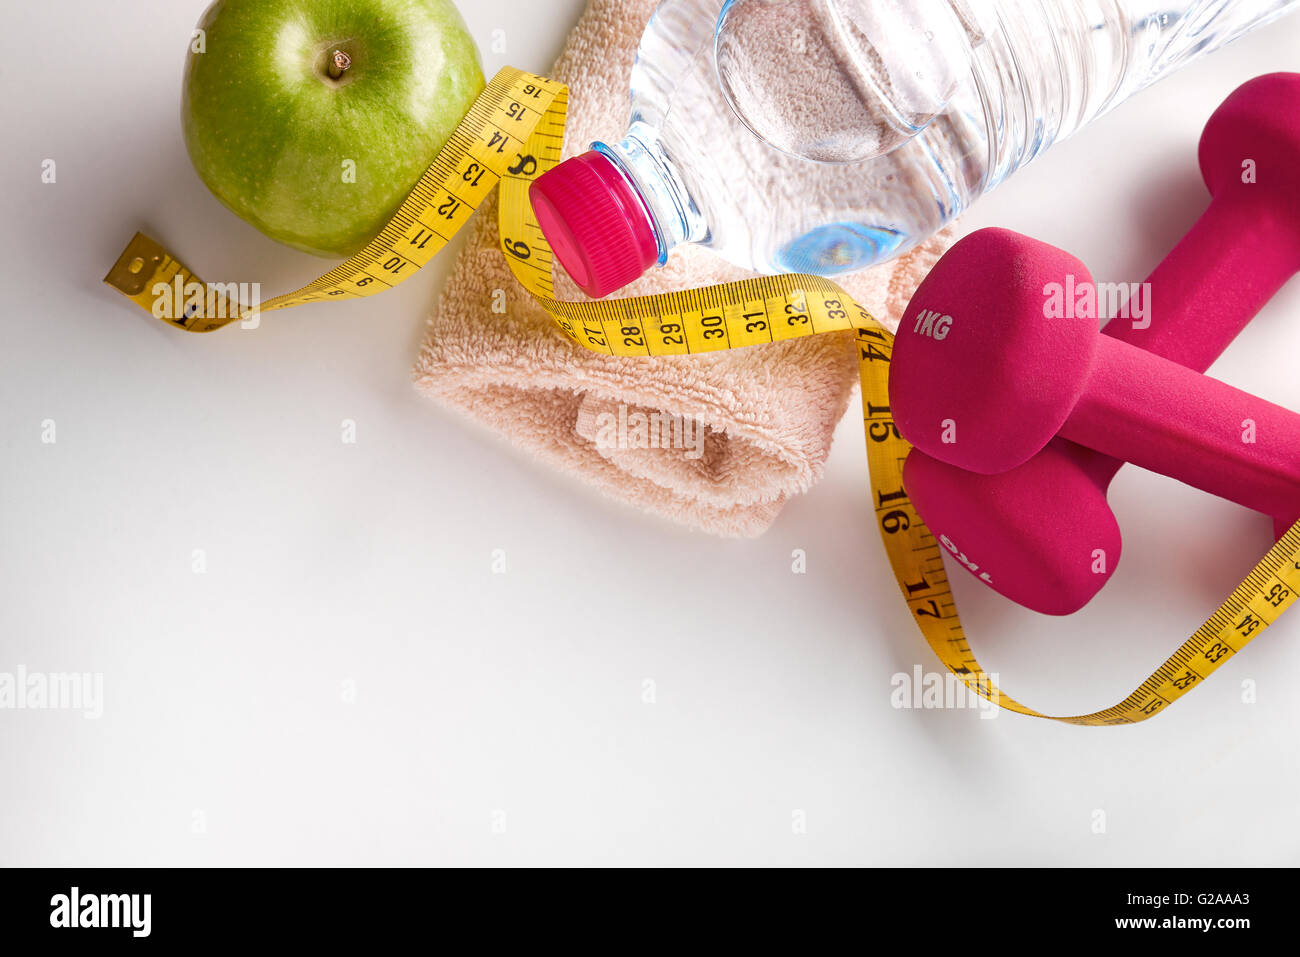 Rosa Hanteln mit Apfel, Mineralwasserflasche, Handtuch und Maßband auf weißen Tisch. Konzept-Gesundheit, Ernährung und Sport. Stockfoto